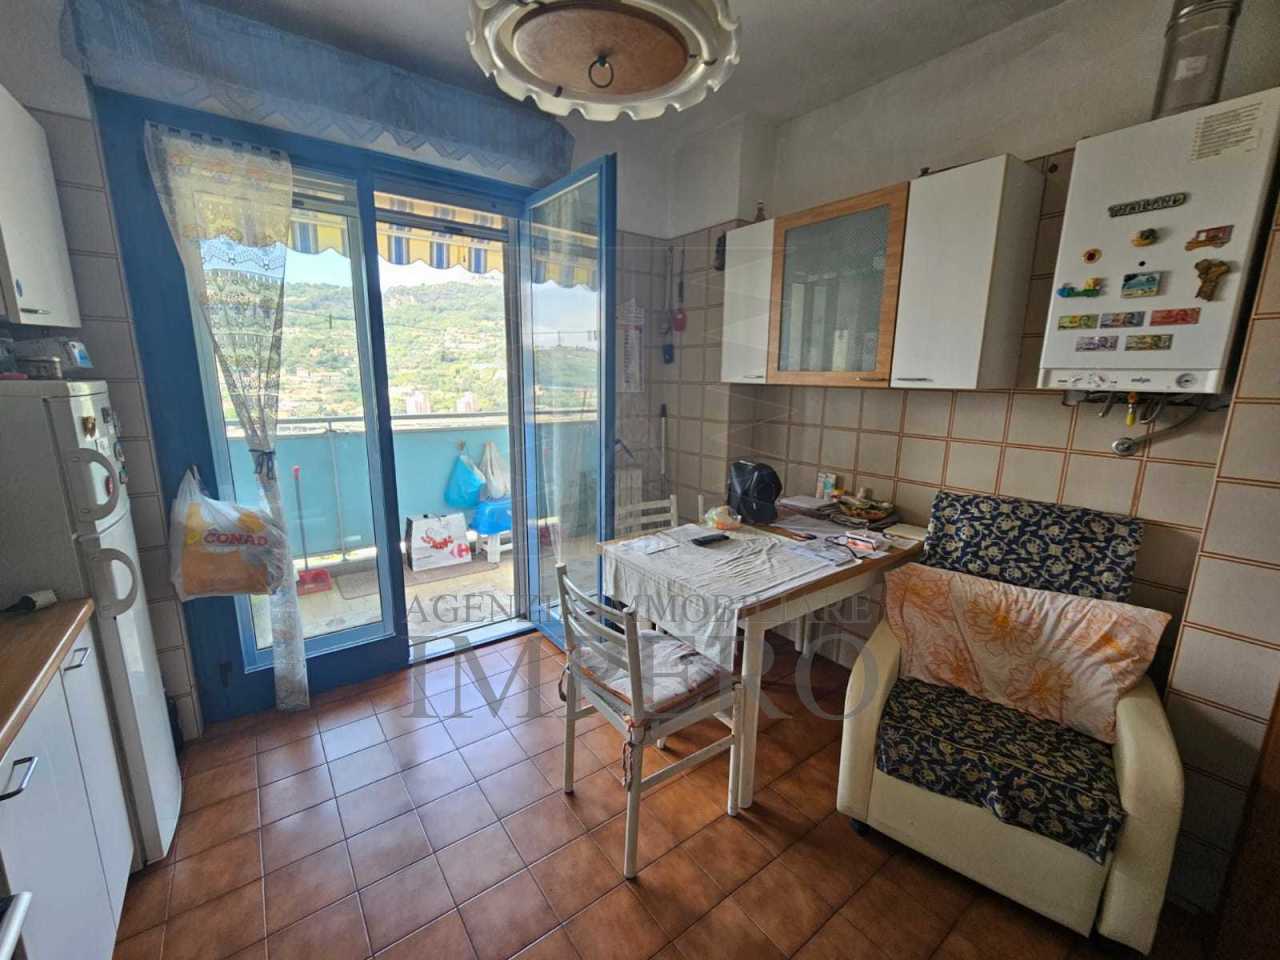 Appartamento in vendita a Ventimiglia, 4 locali, prezzo € 150.000 | PortaleAgenzieImmobiliari.it